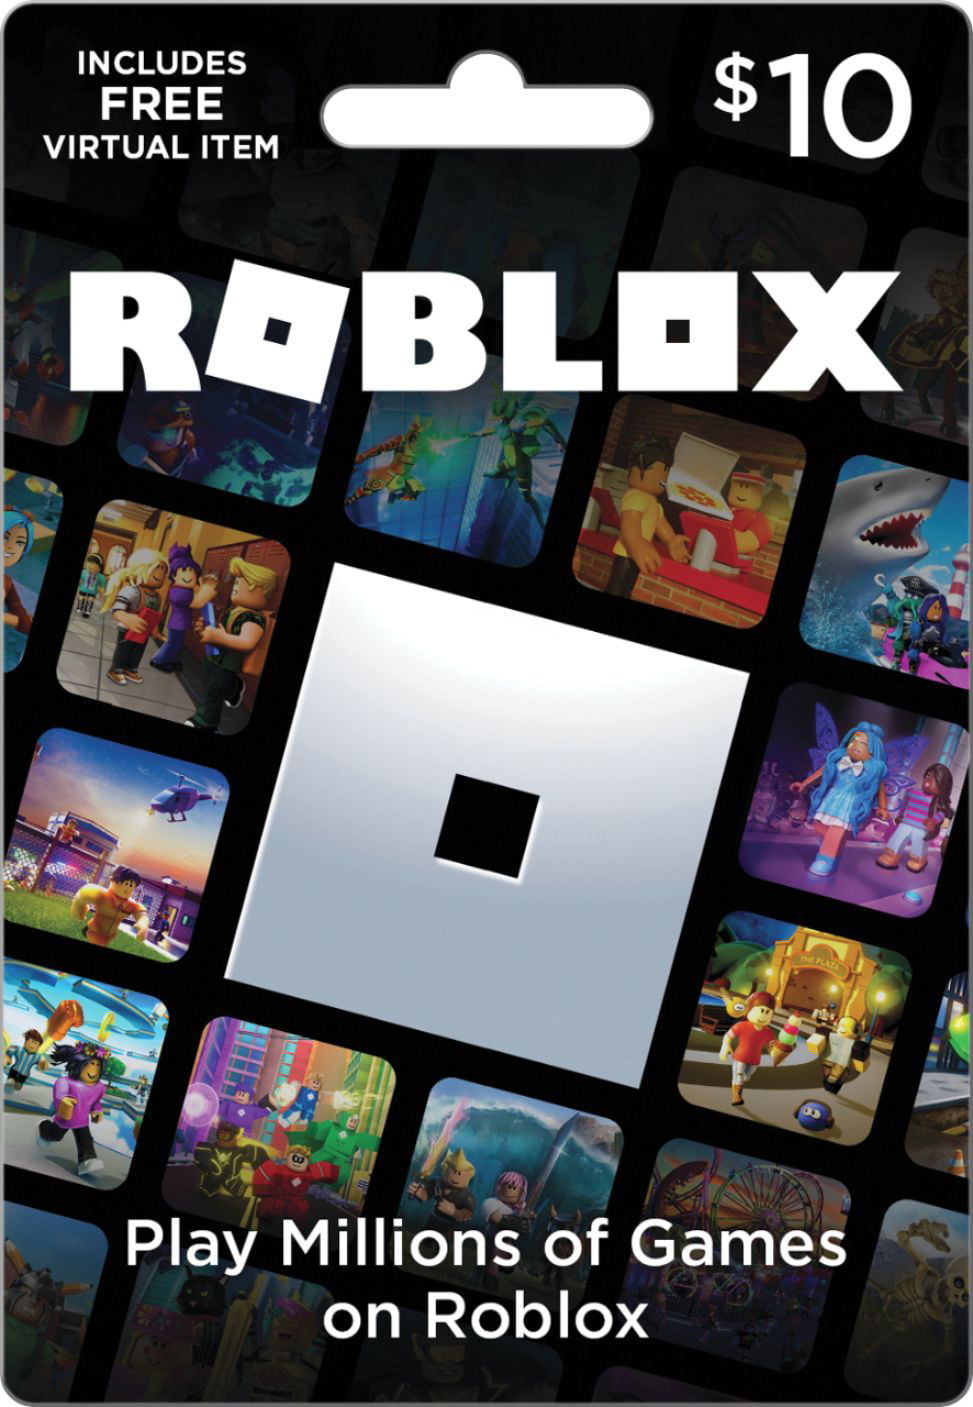 Roblox 10 Digital Gift Card Includes Exclusive Virtual Item Digital Download Walmart Com Walmart Com - comprar robux wall mart